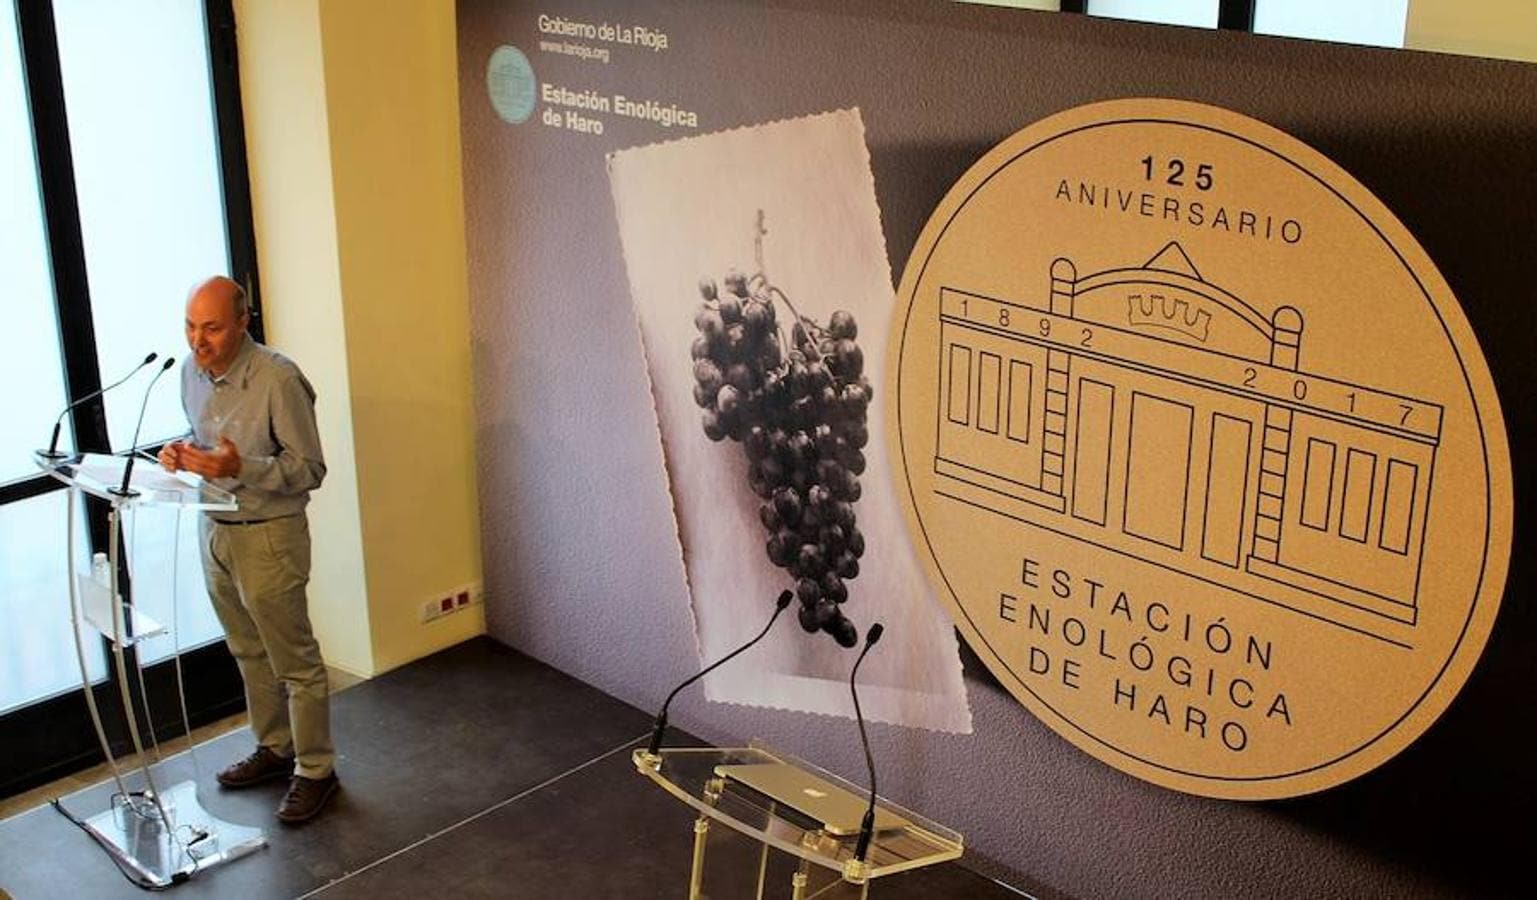 La Estación Enológica de Haro vivió la celebración del 125 aniversario en el que se anuncia el relevo en la dirección de Elena Meléndez Álvarez tras la jubilación de Montserrat Íñiguez.